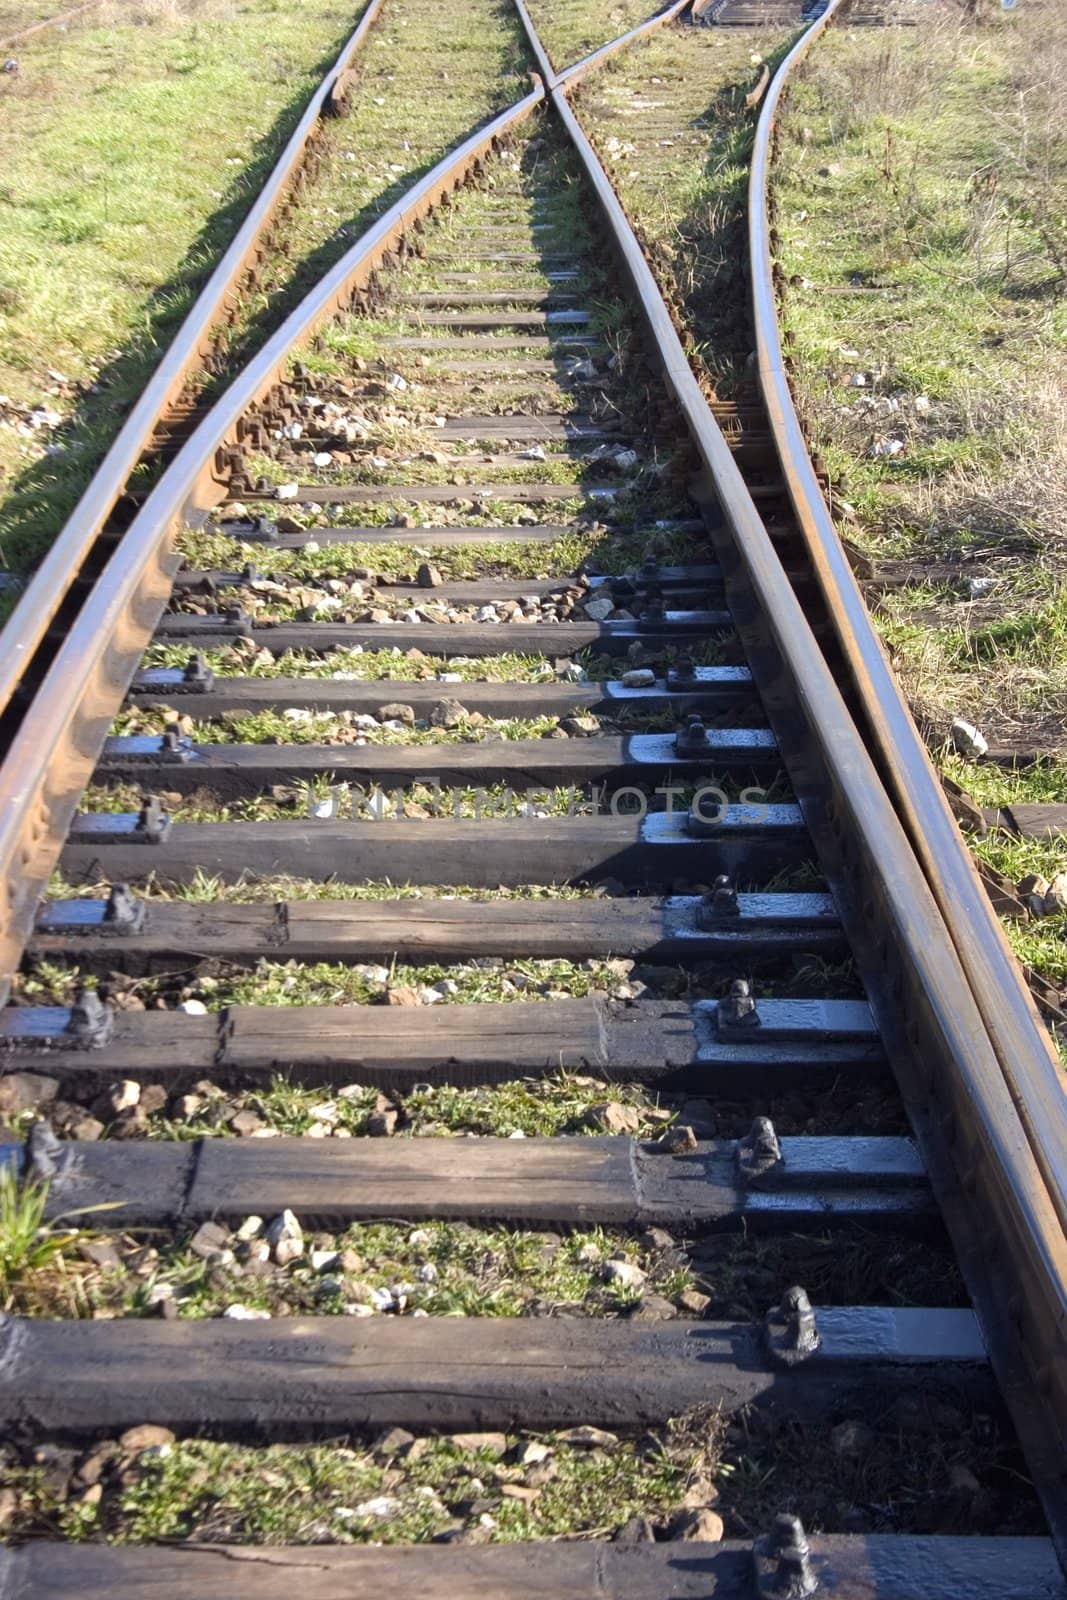 railway steel tracks